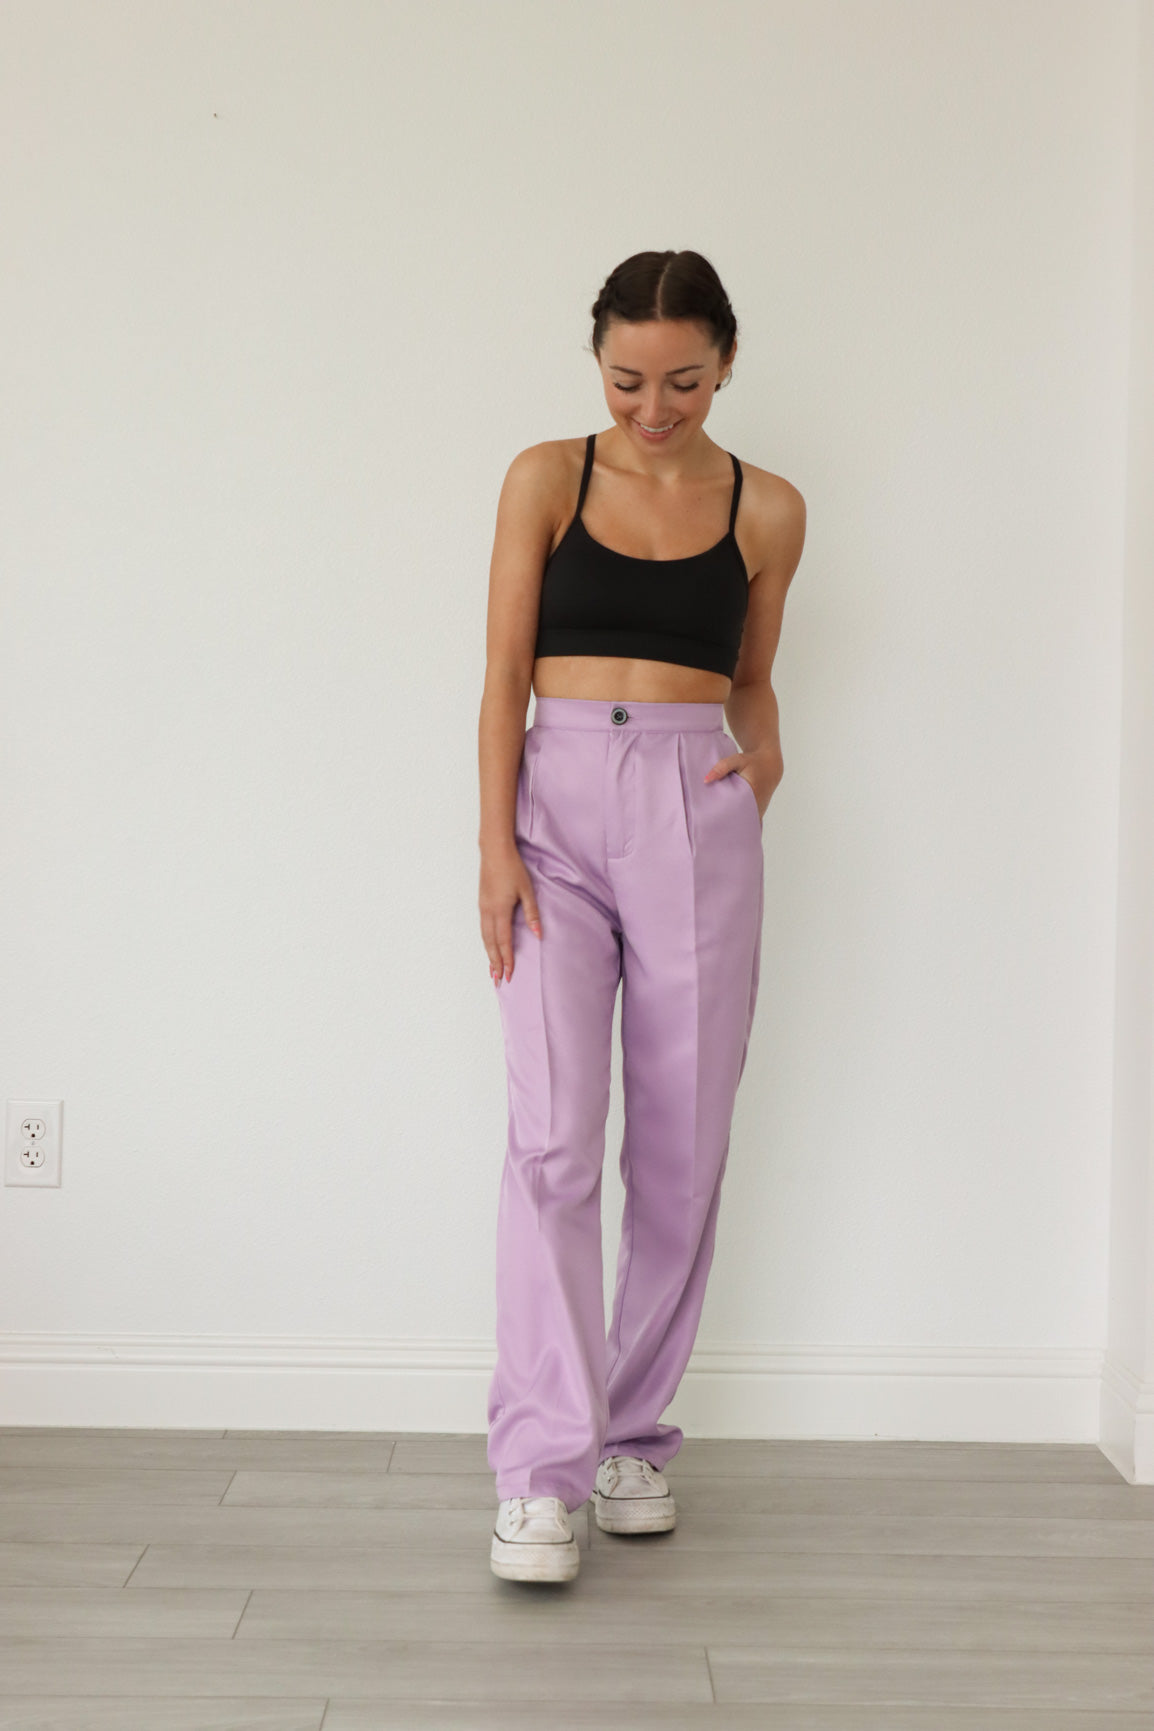 35 Lavender pants outfits ideas  lavender pants outfits purple pants  outfit